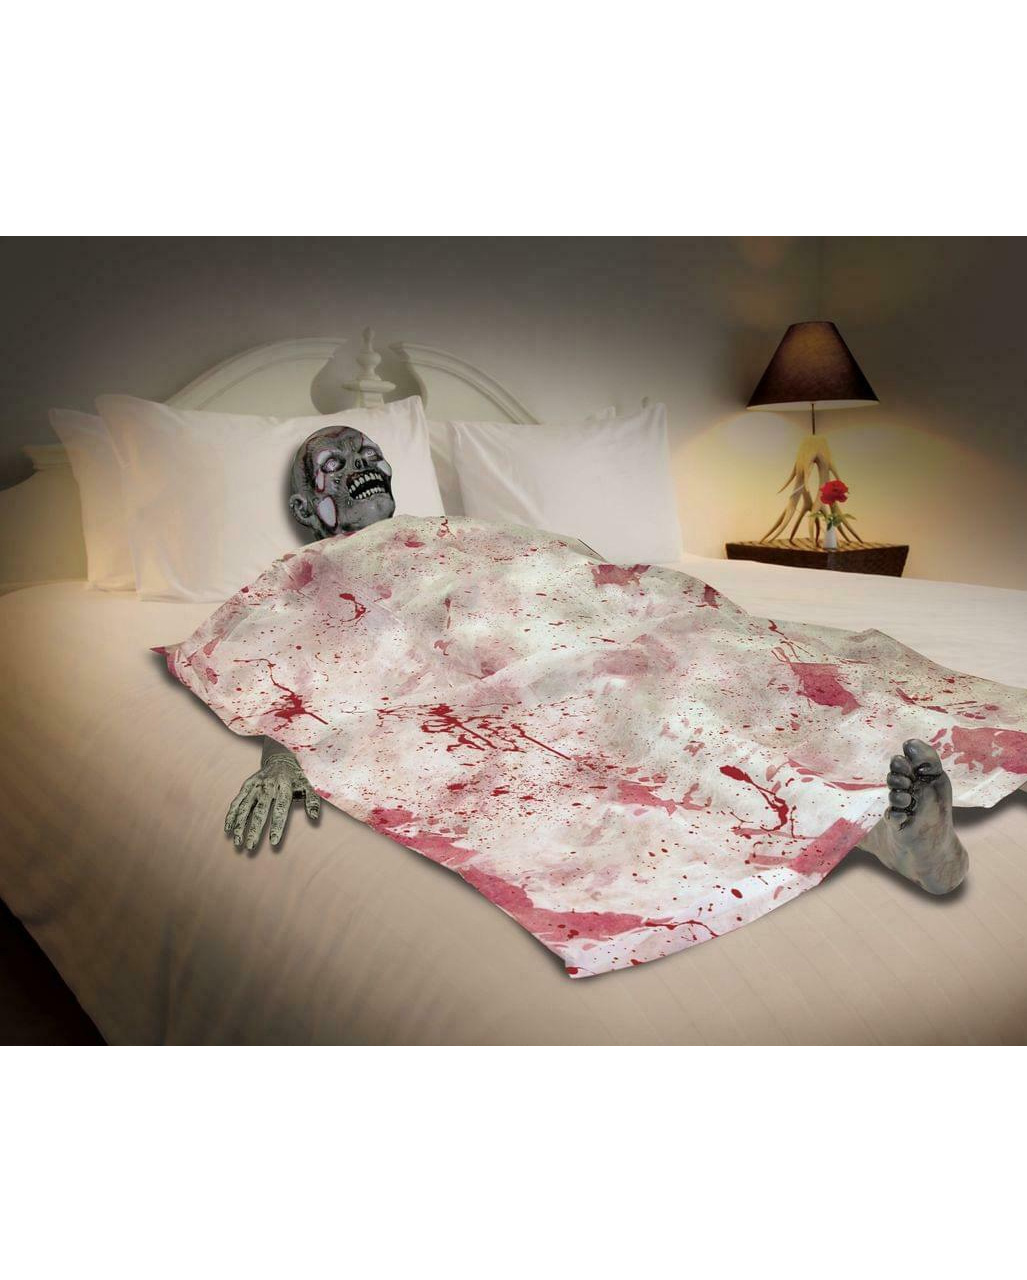 Zombie Leichnam mit Bettdecke  Halloweendeko